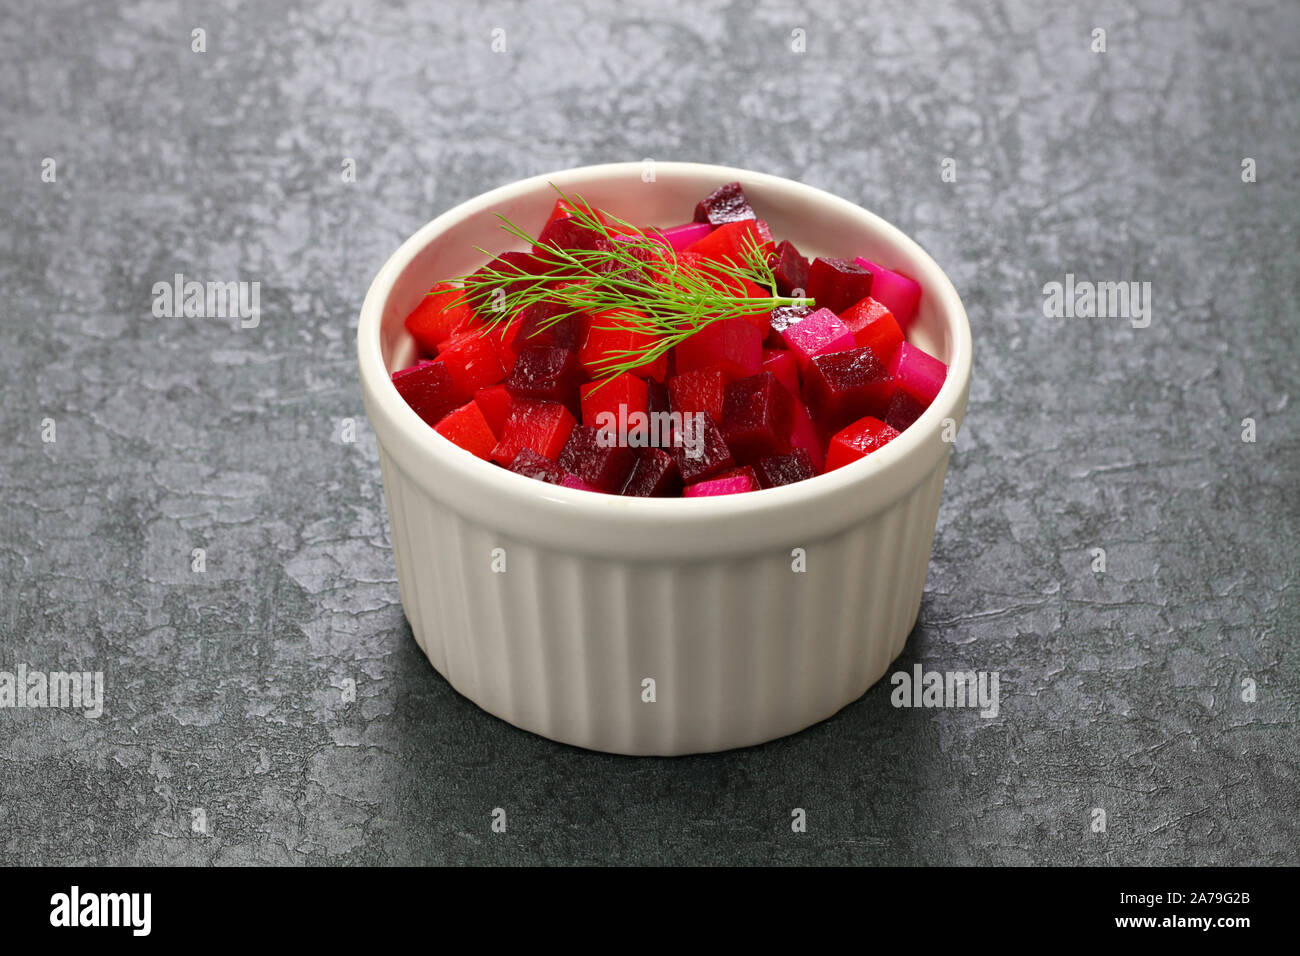 Punajuurisalaatti, Finnische Weihnachten rote Beete Salat Stockfoto